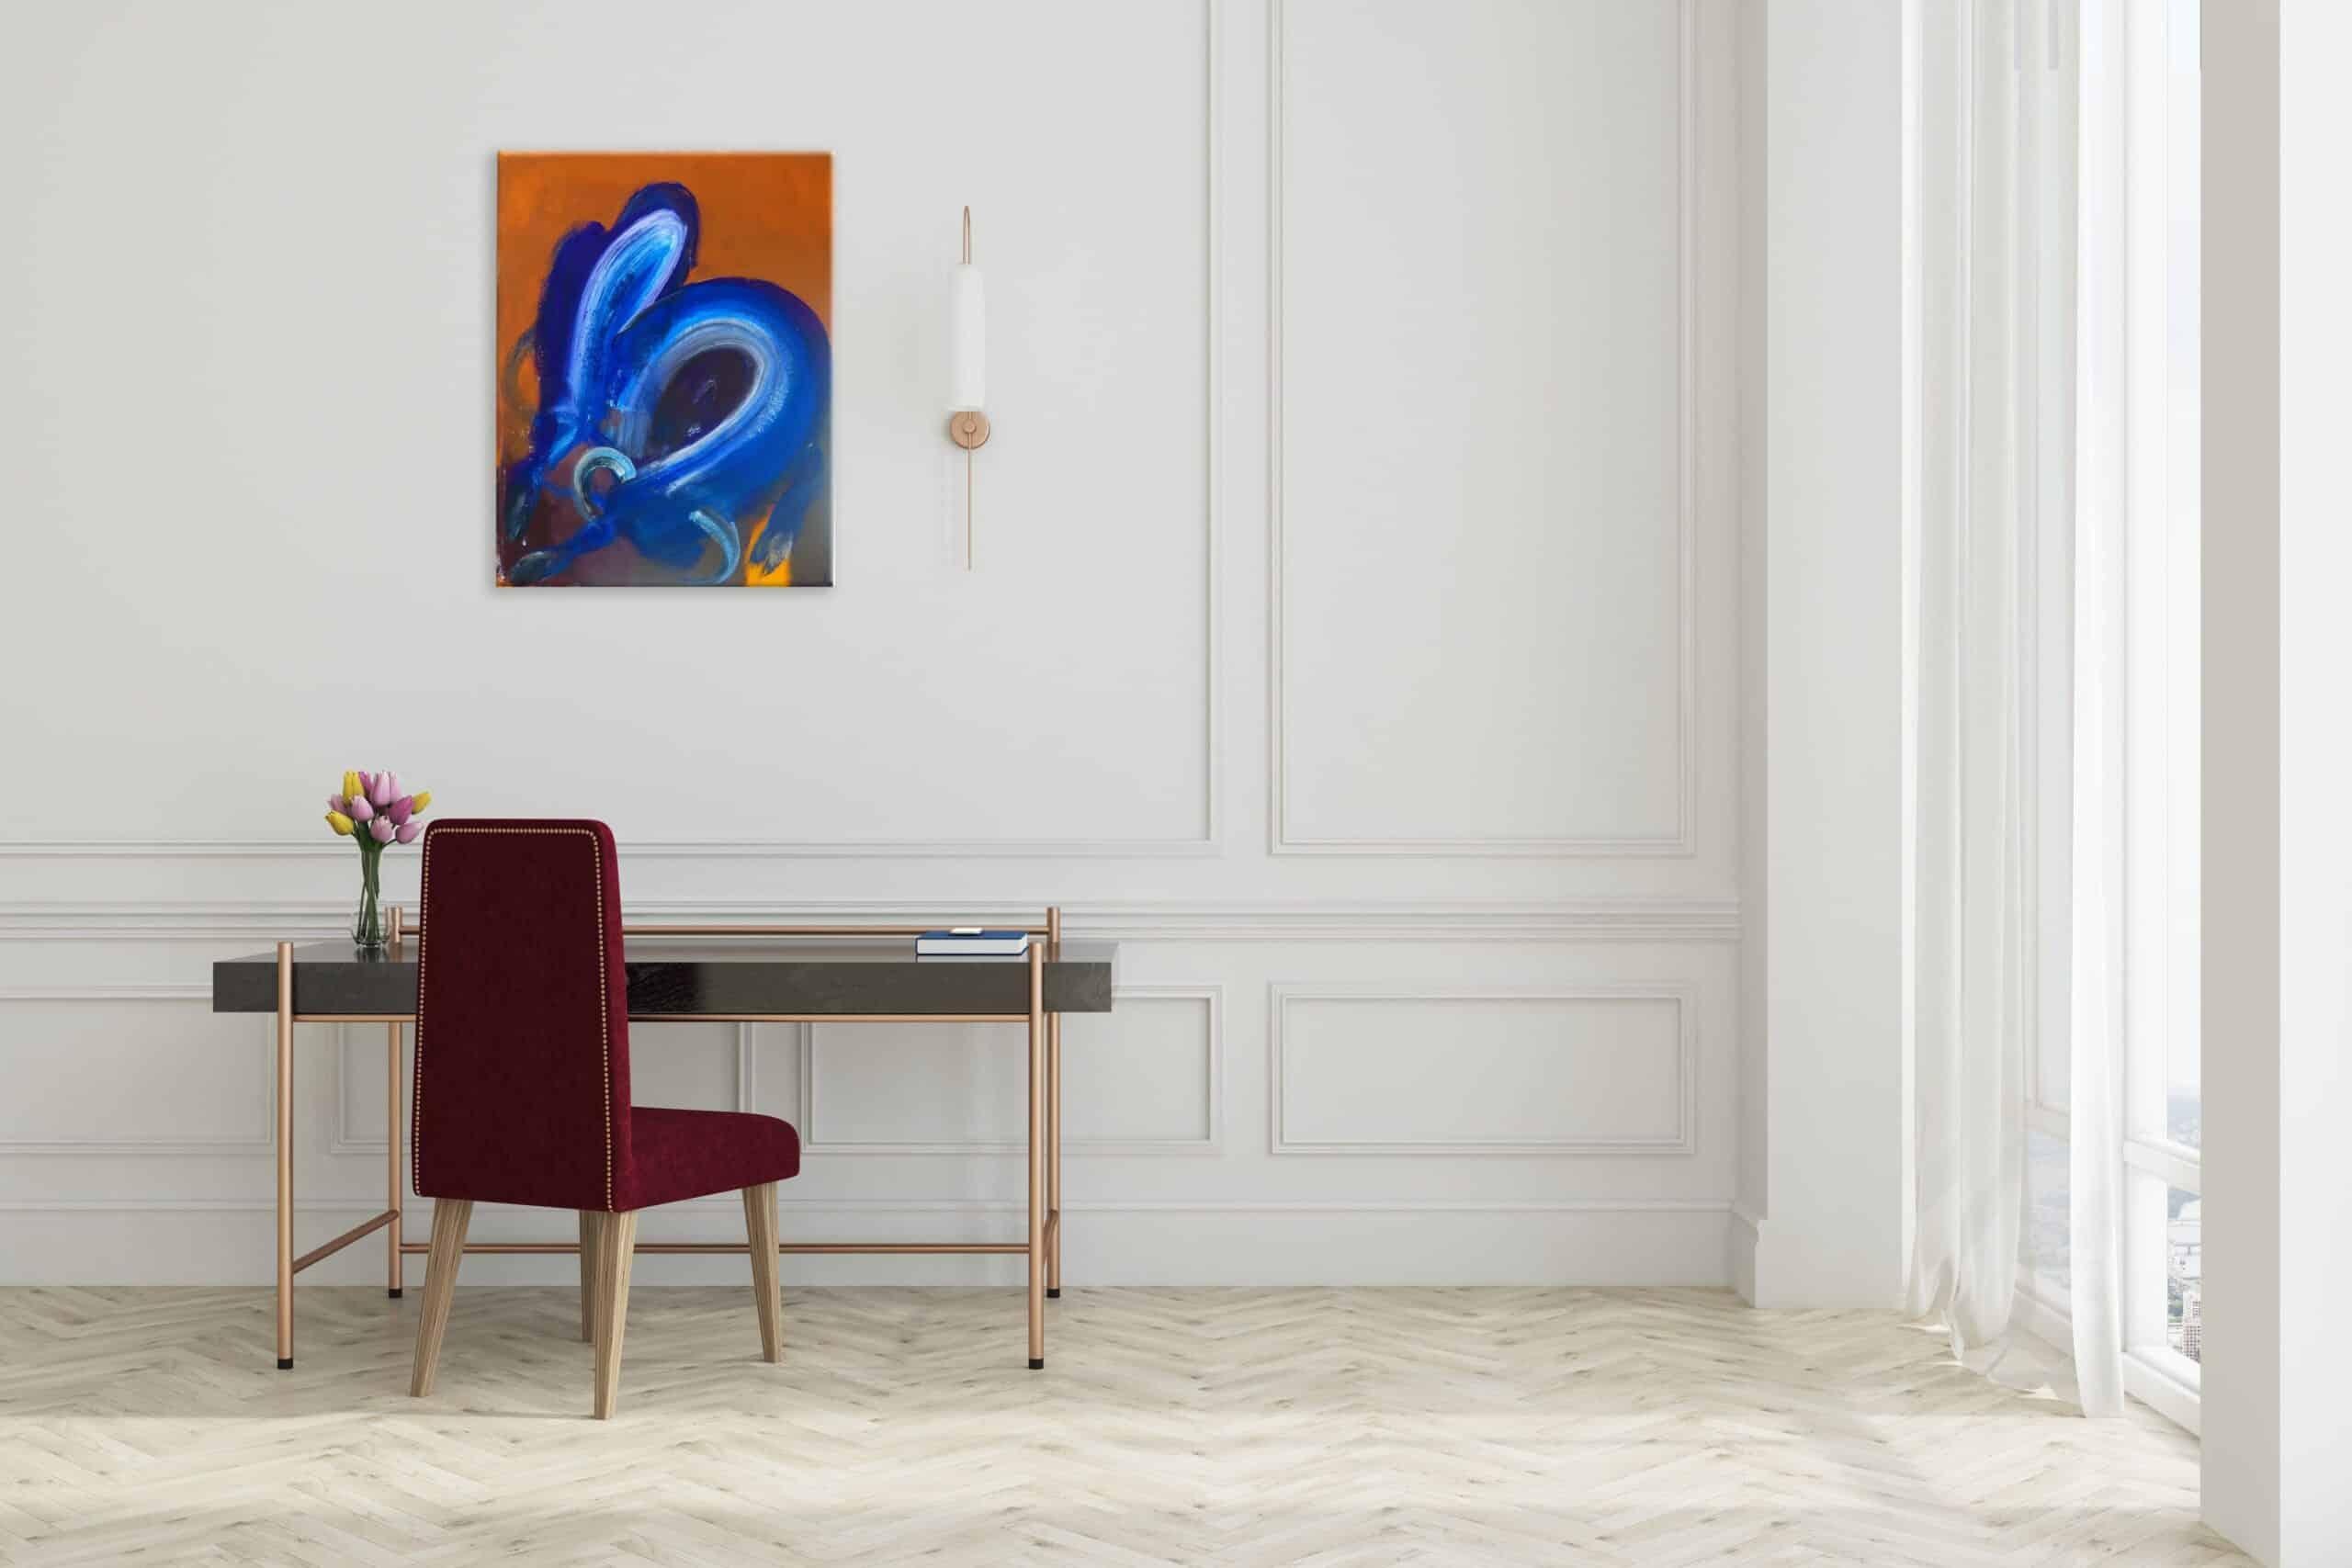 Taureau XI est une peinture acrylique sur papier unique de l'artiste contemporain Christophe Dupety, dont les dimensions sont de 65 × 50 cm (25,6 × 19,7 in).
L'œuvre est signée, vendue non encadrée et accompagnée d'un certificat